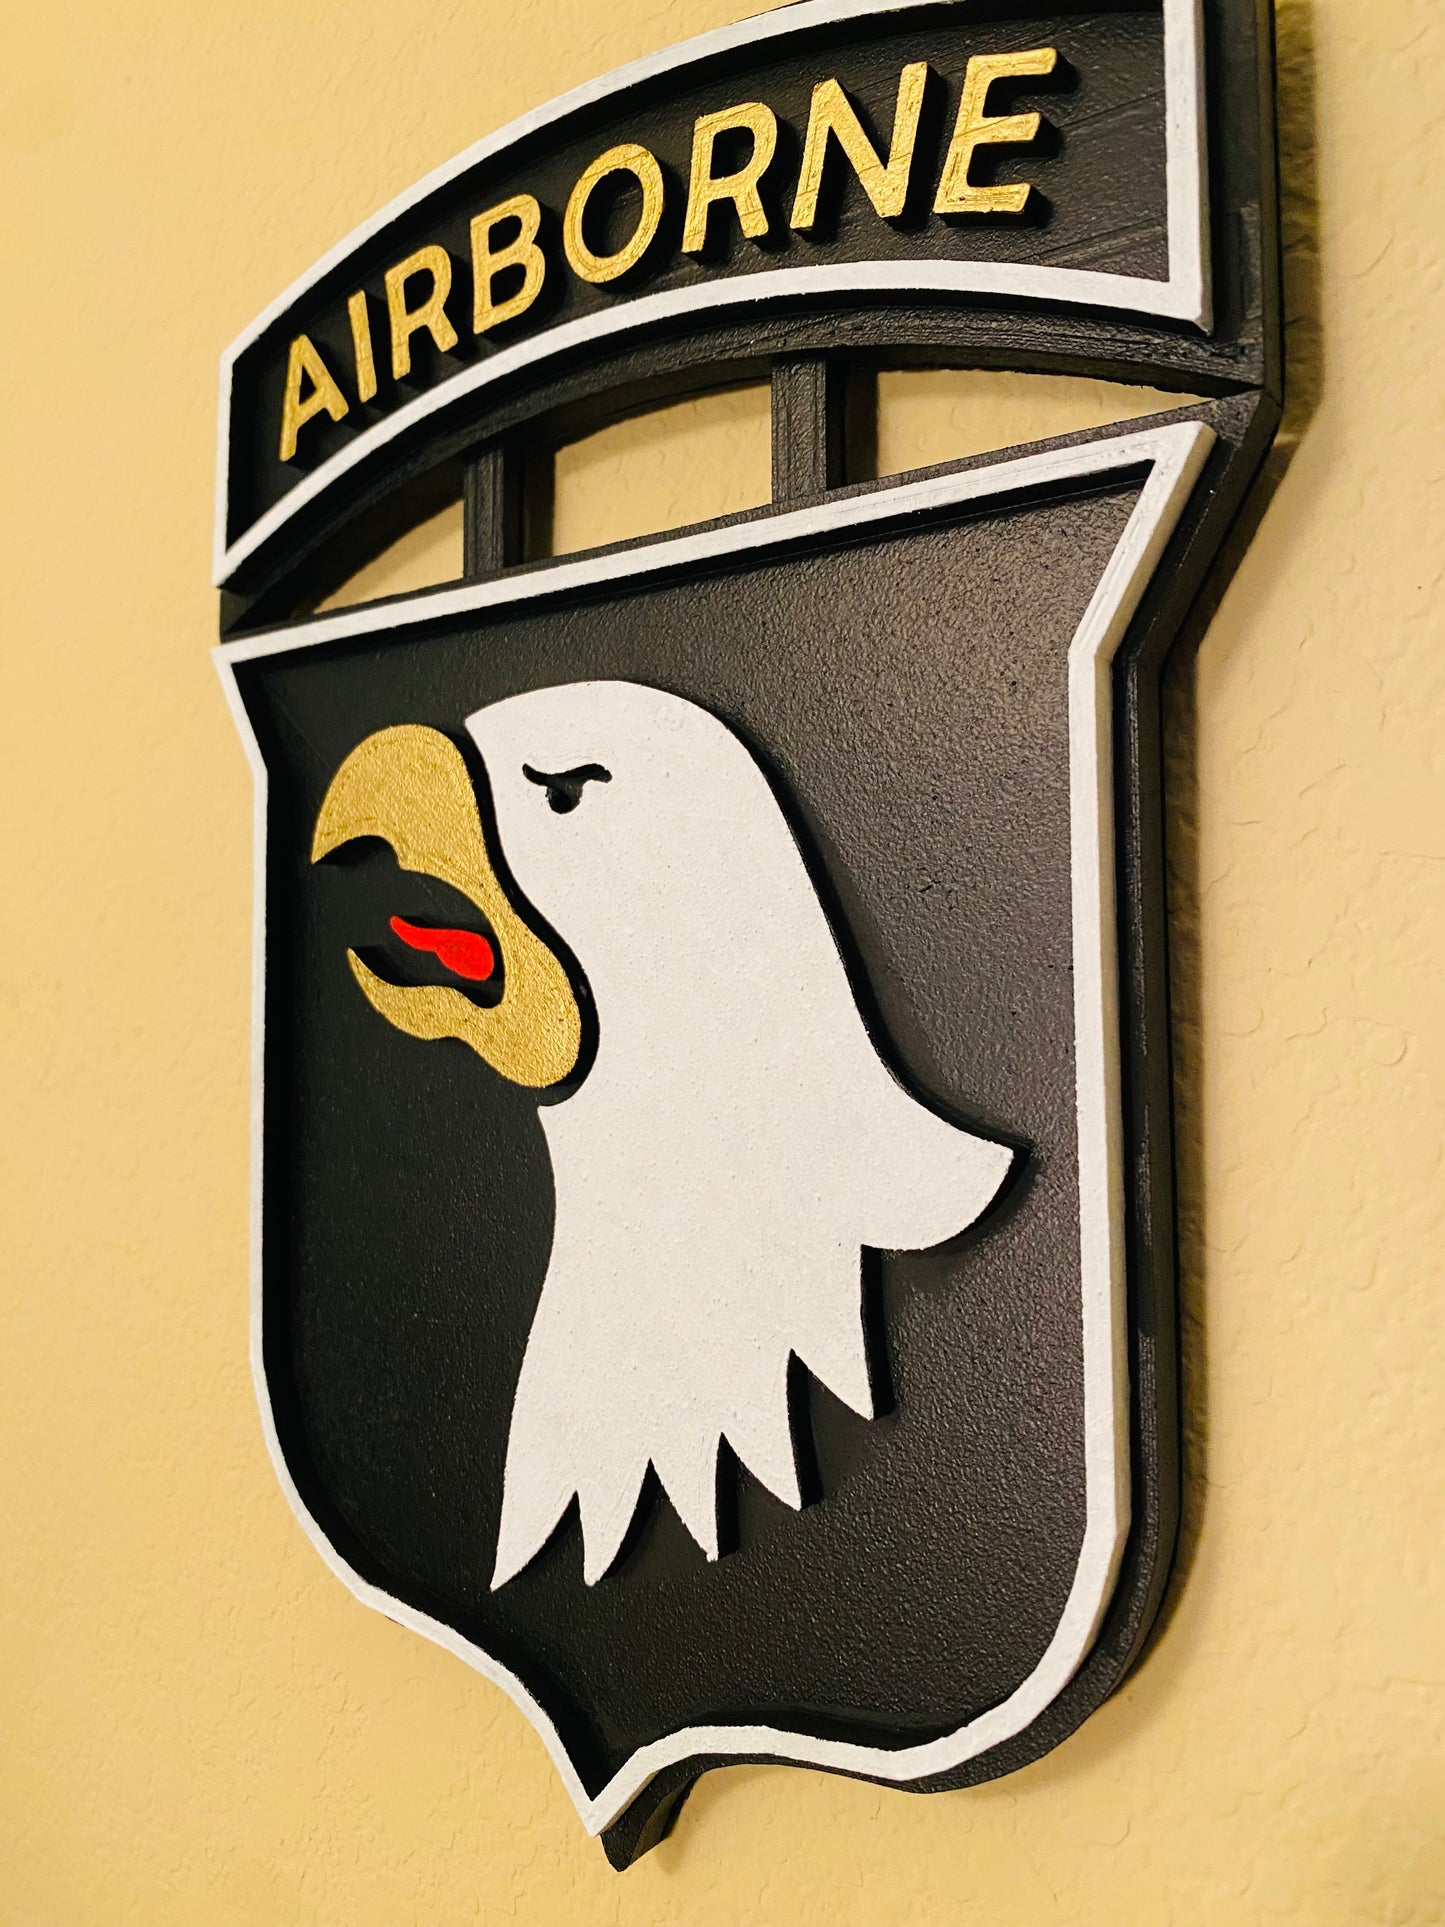 101st Airborne Valor Plaque